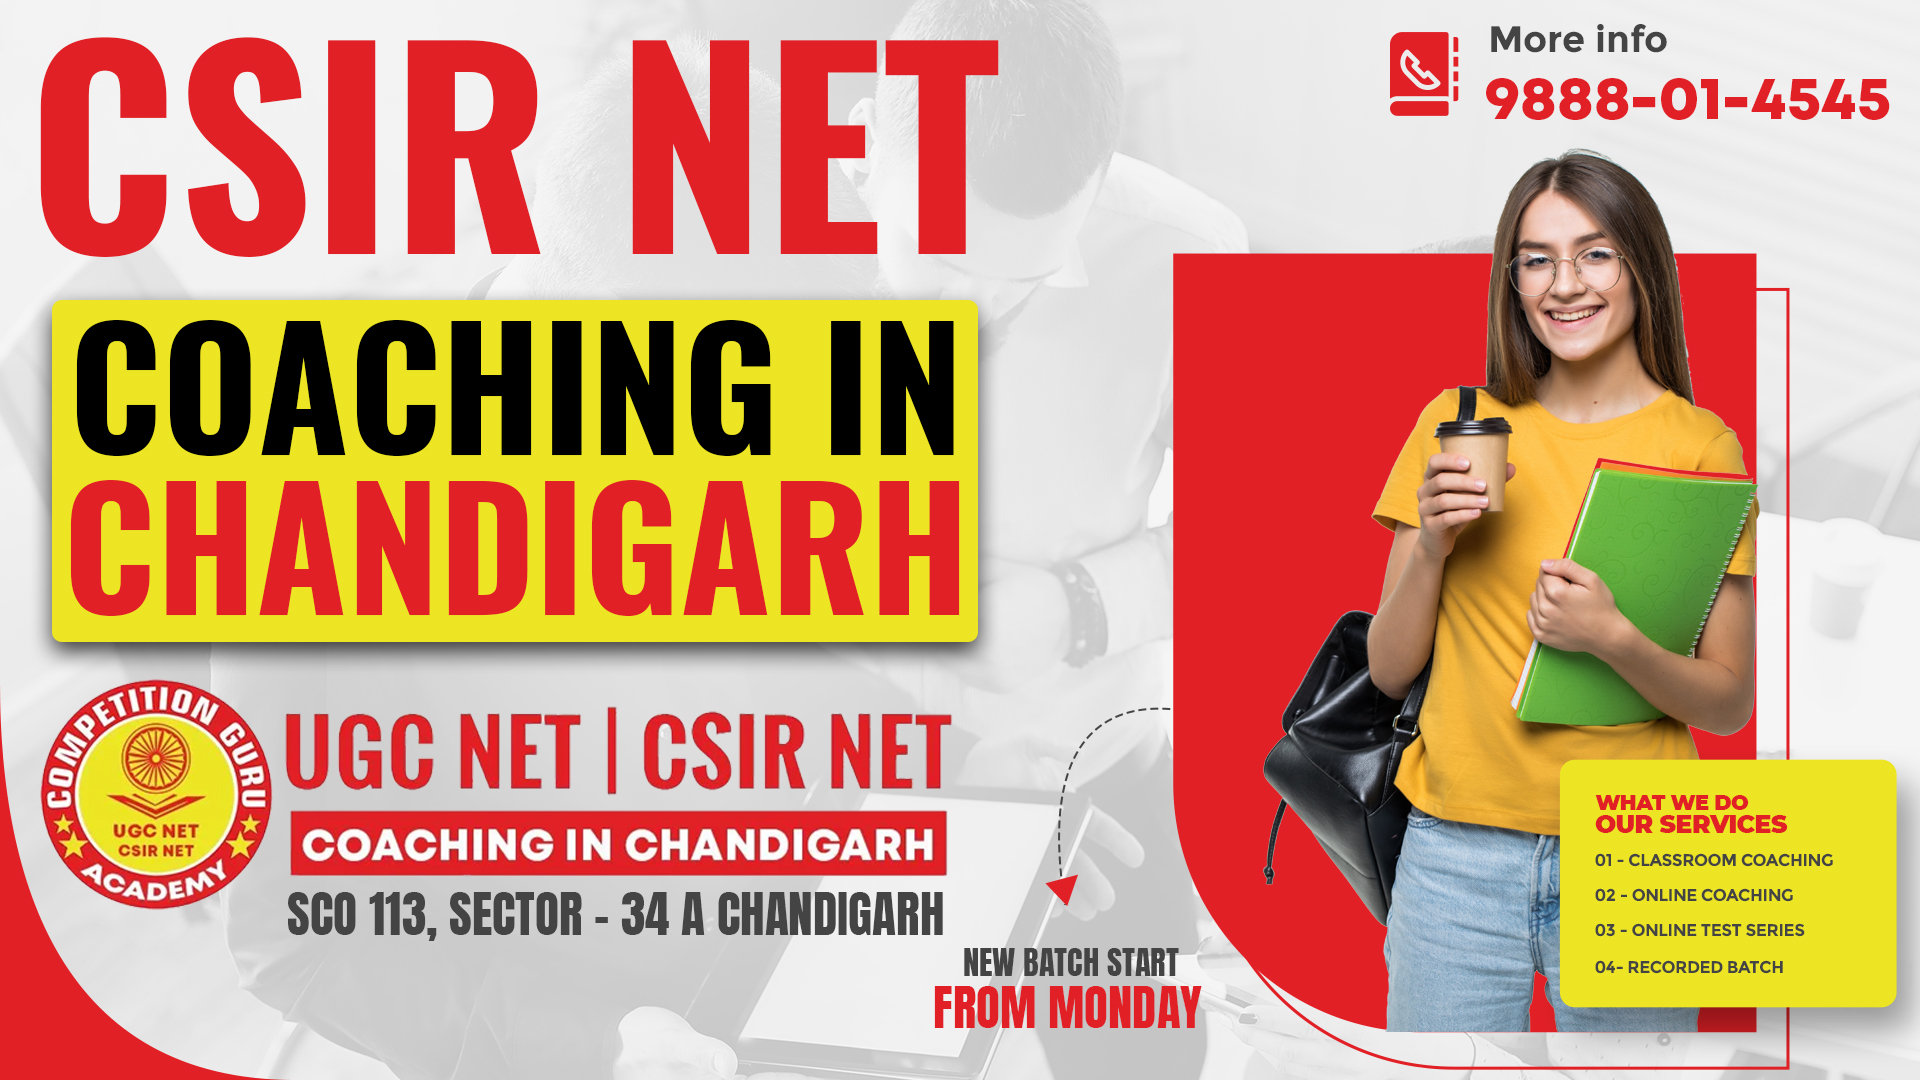 CSIR NET Coaching in Chandigarh - Call-9888-01-4545